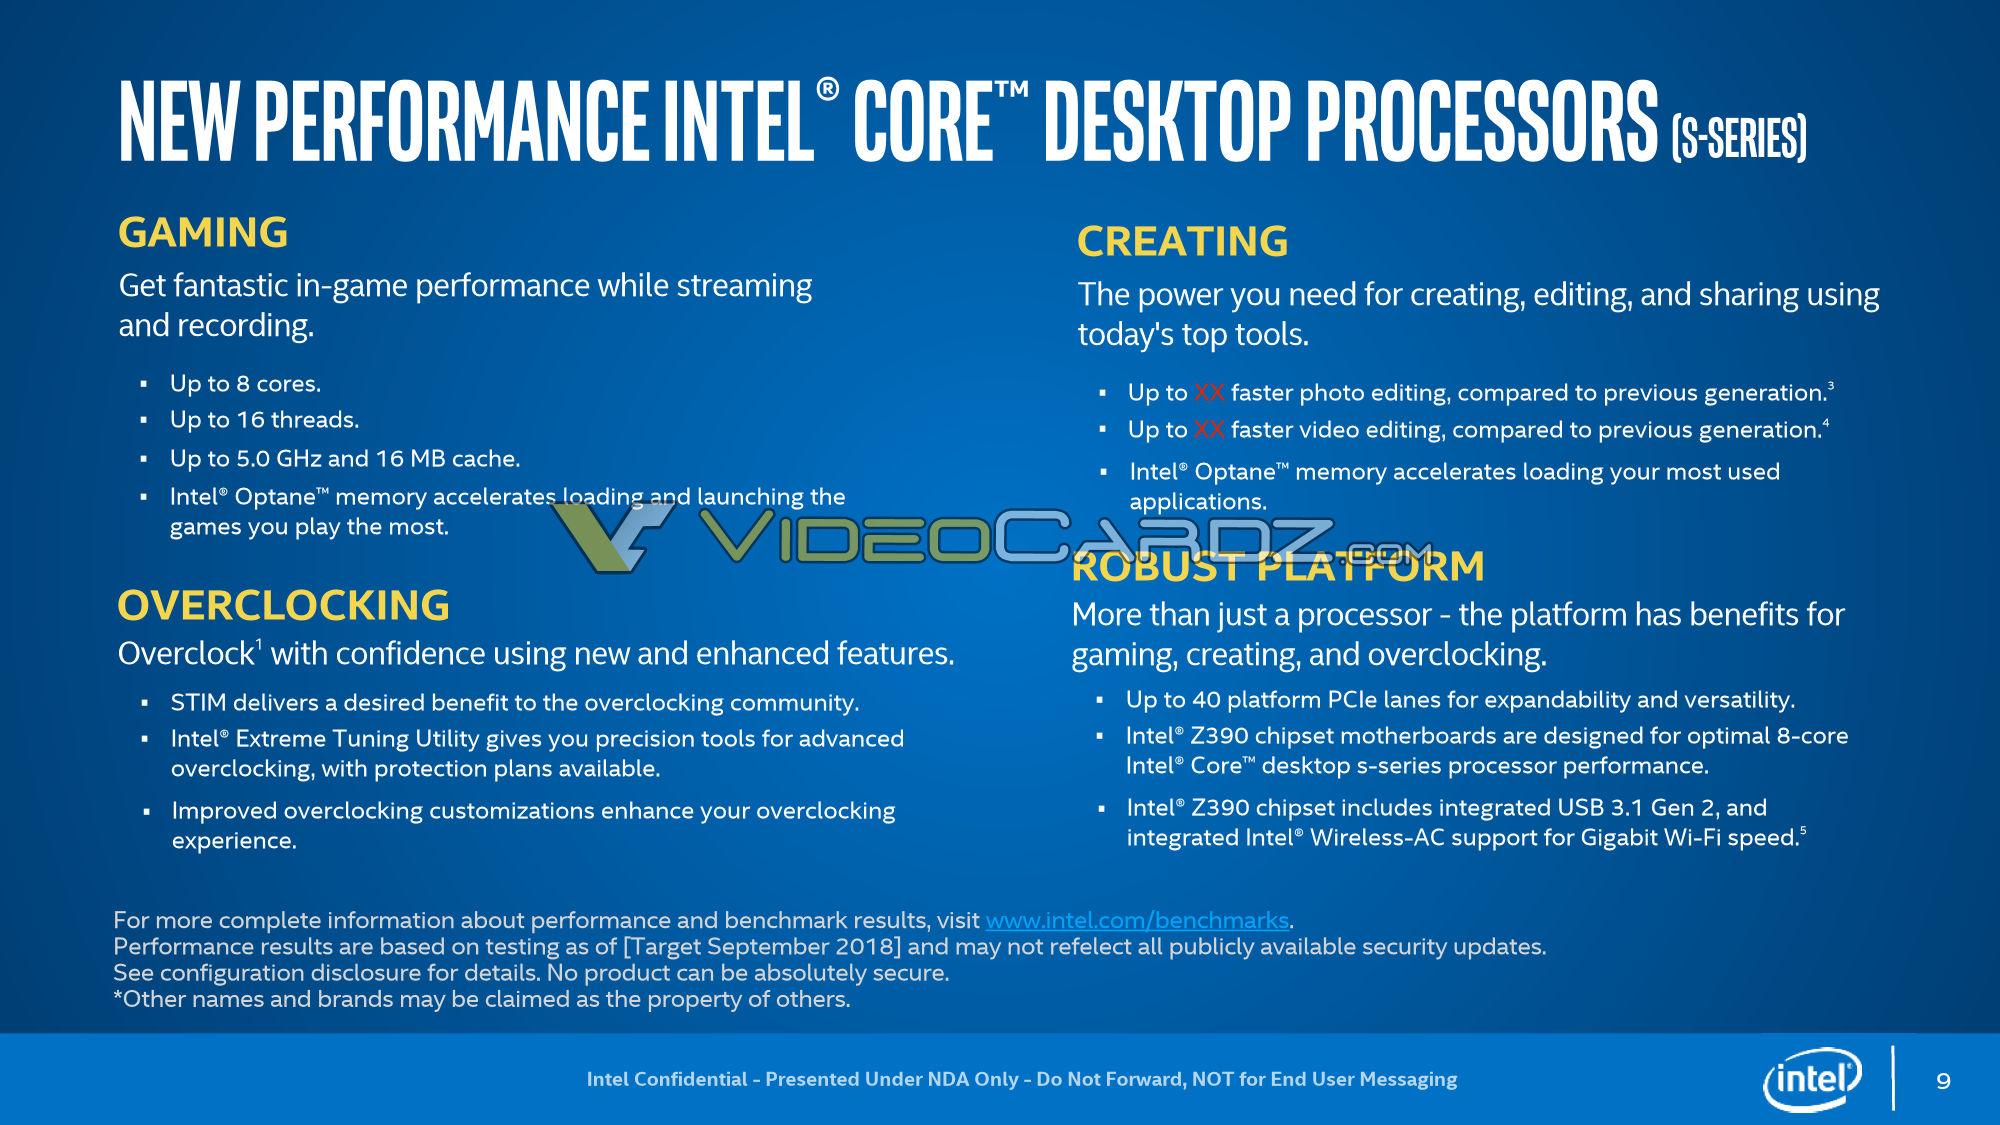 Intel-9000-Series-features.jpg